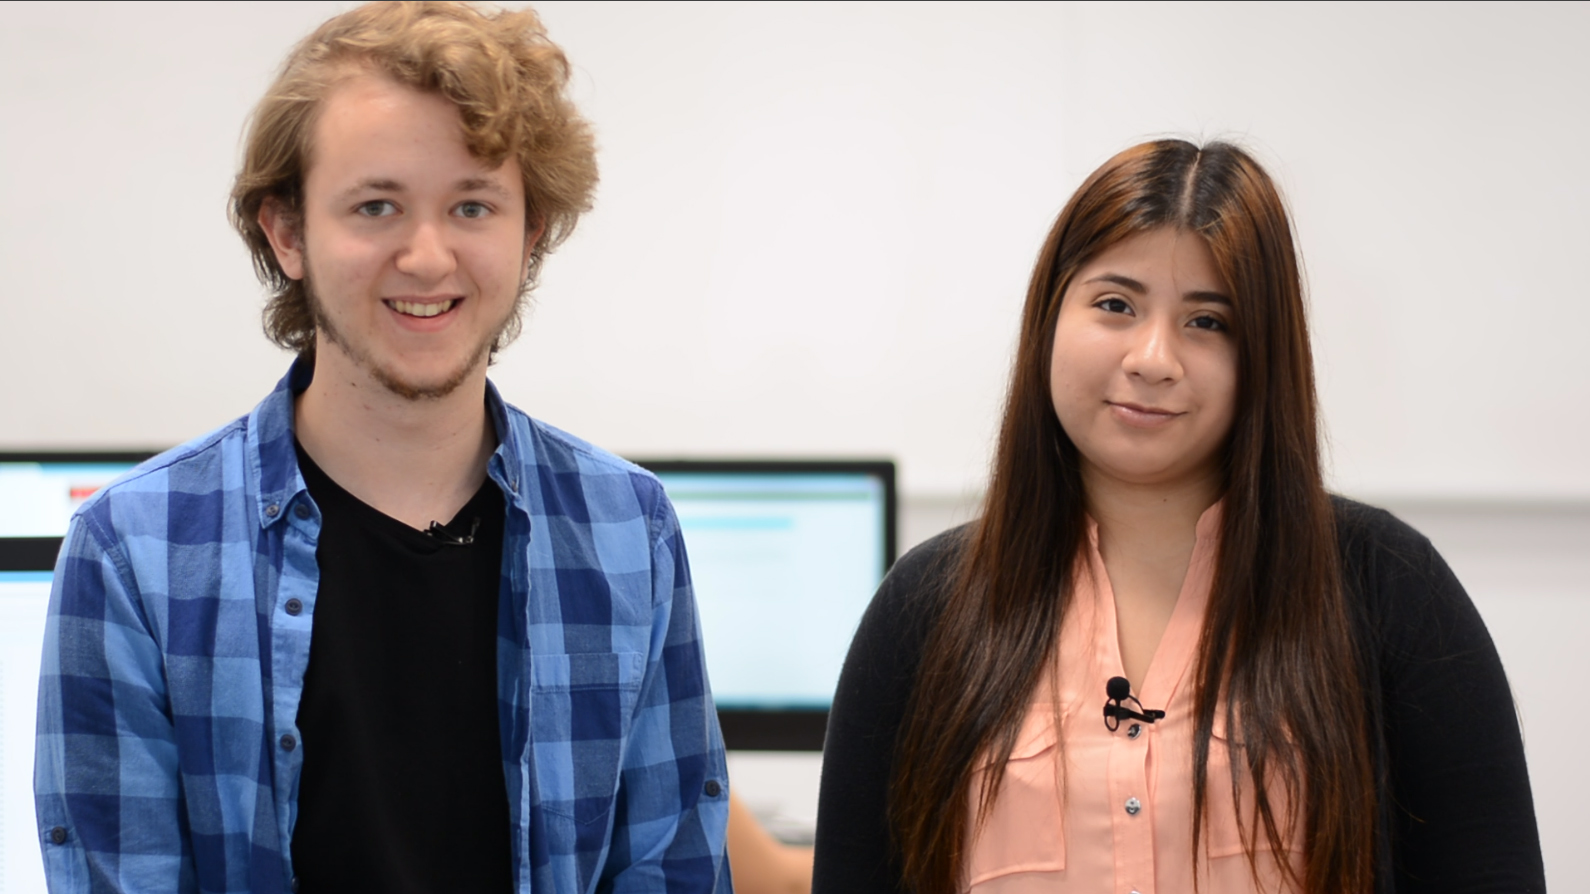 Cuatro estudiantes de Ingeniería Informática nos cuentan su experiencia universitaria y su participación en los proyectos